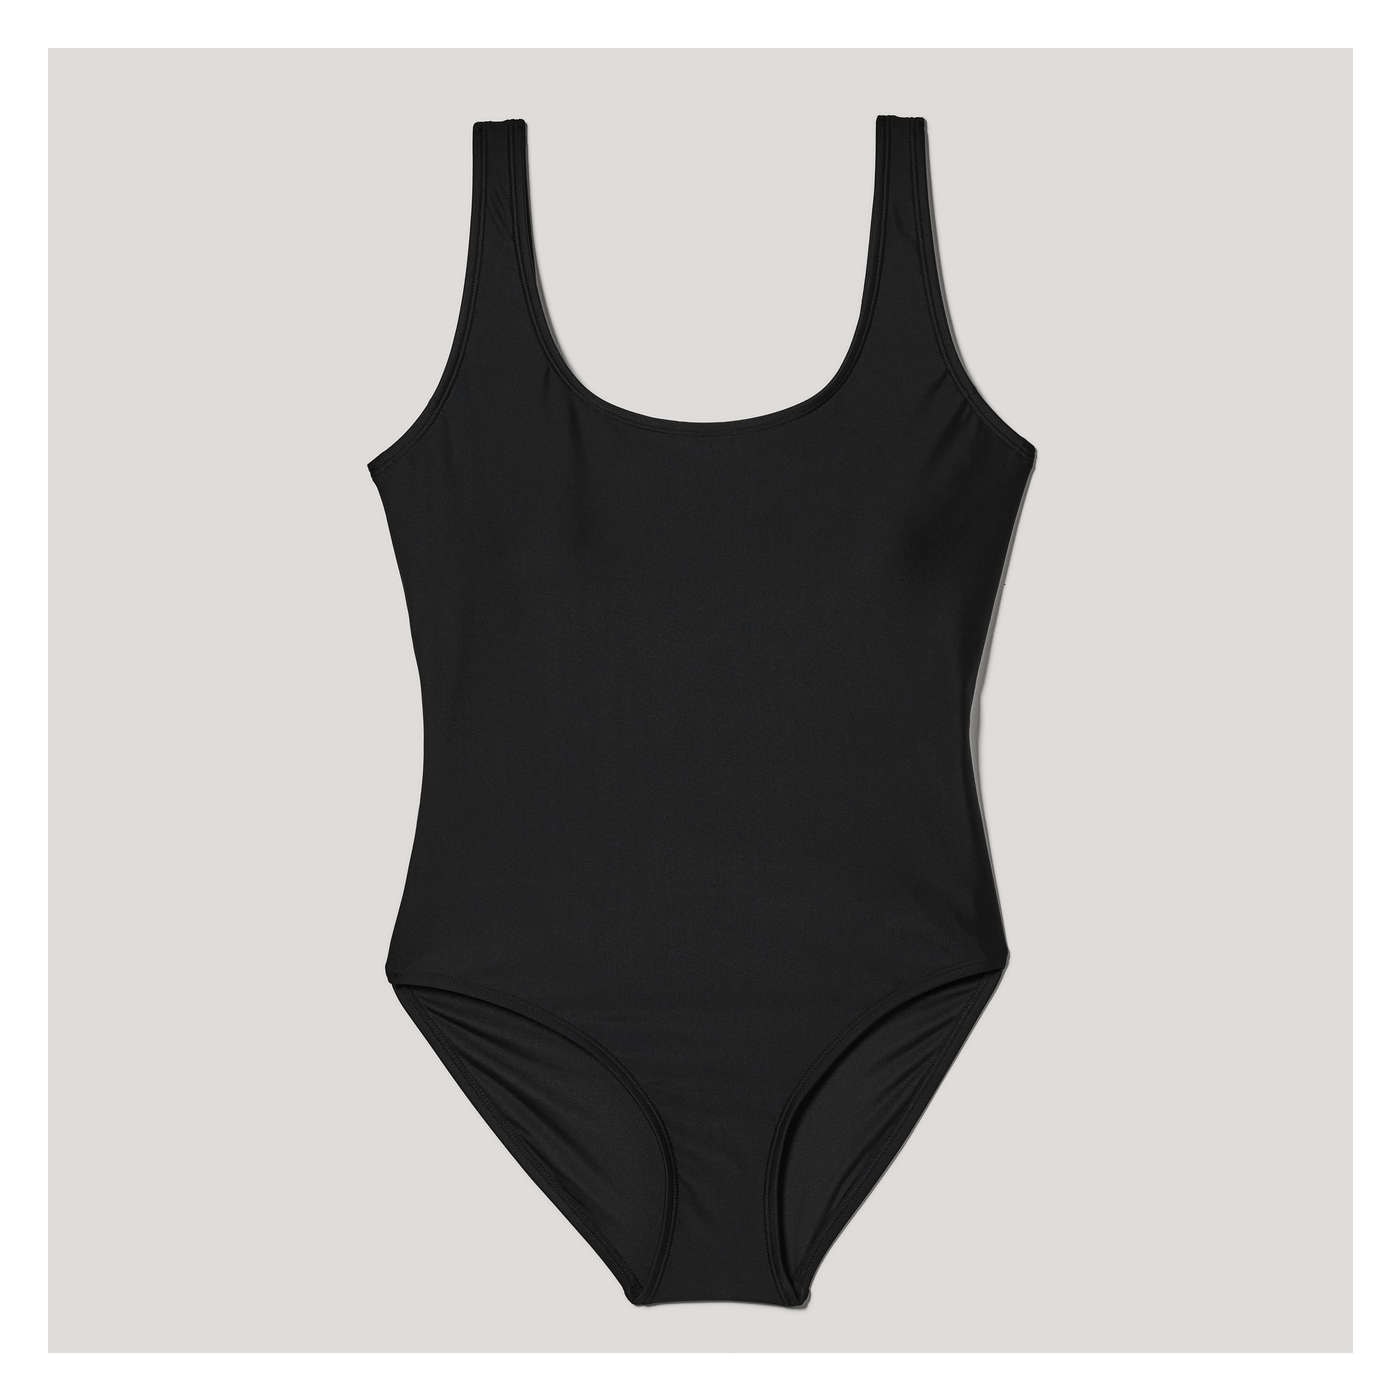 One-Shoulder Swimsuit in Black from Joe Fresh